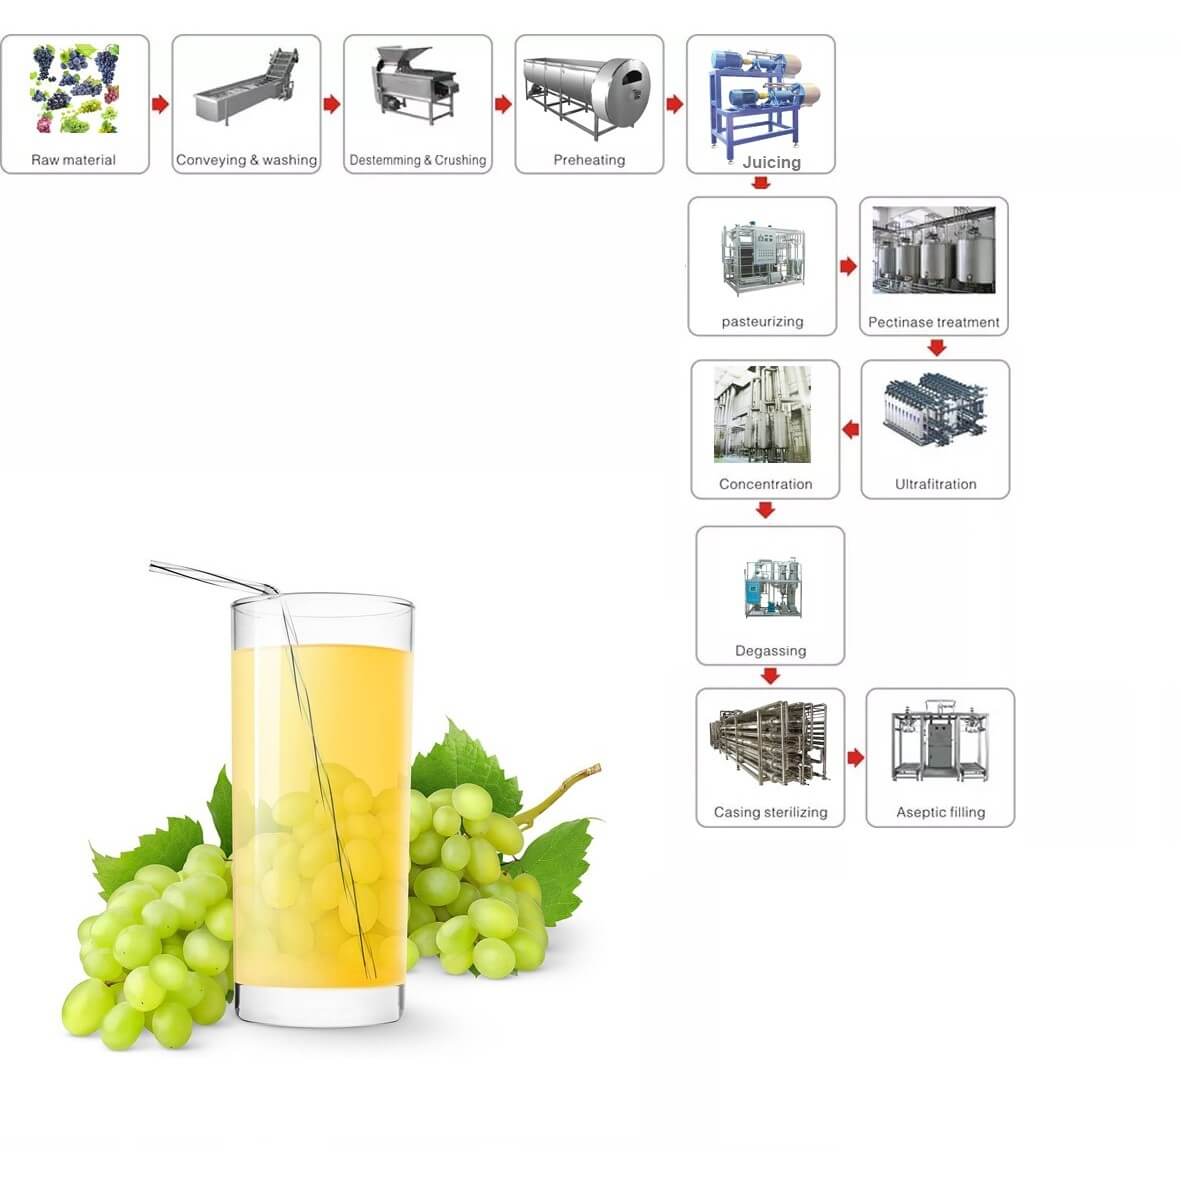 Grape juice processing line